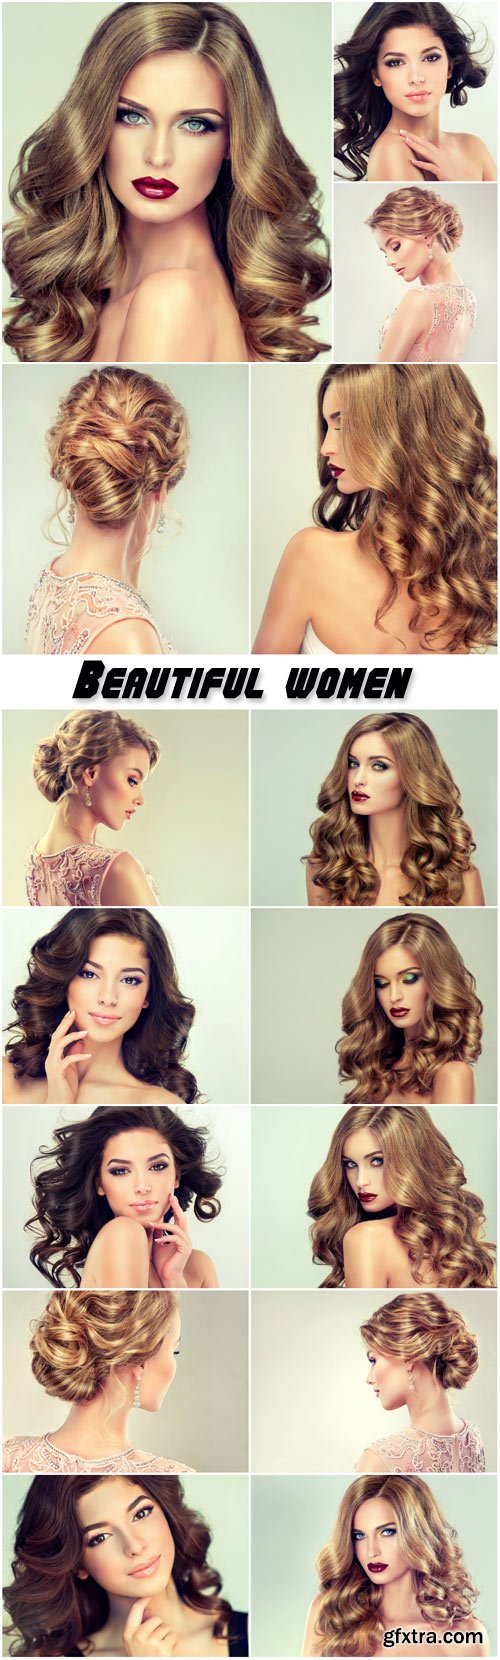 Beautiful women, trendy hairstyles, make-up